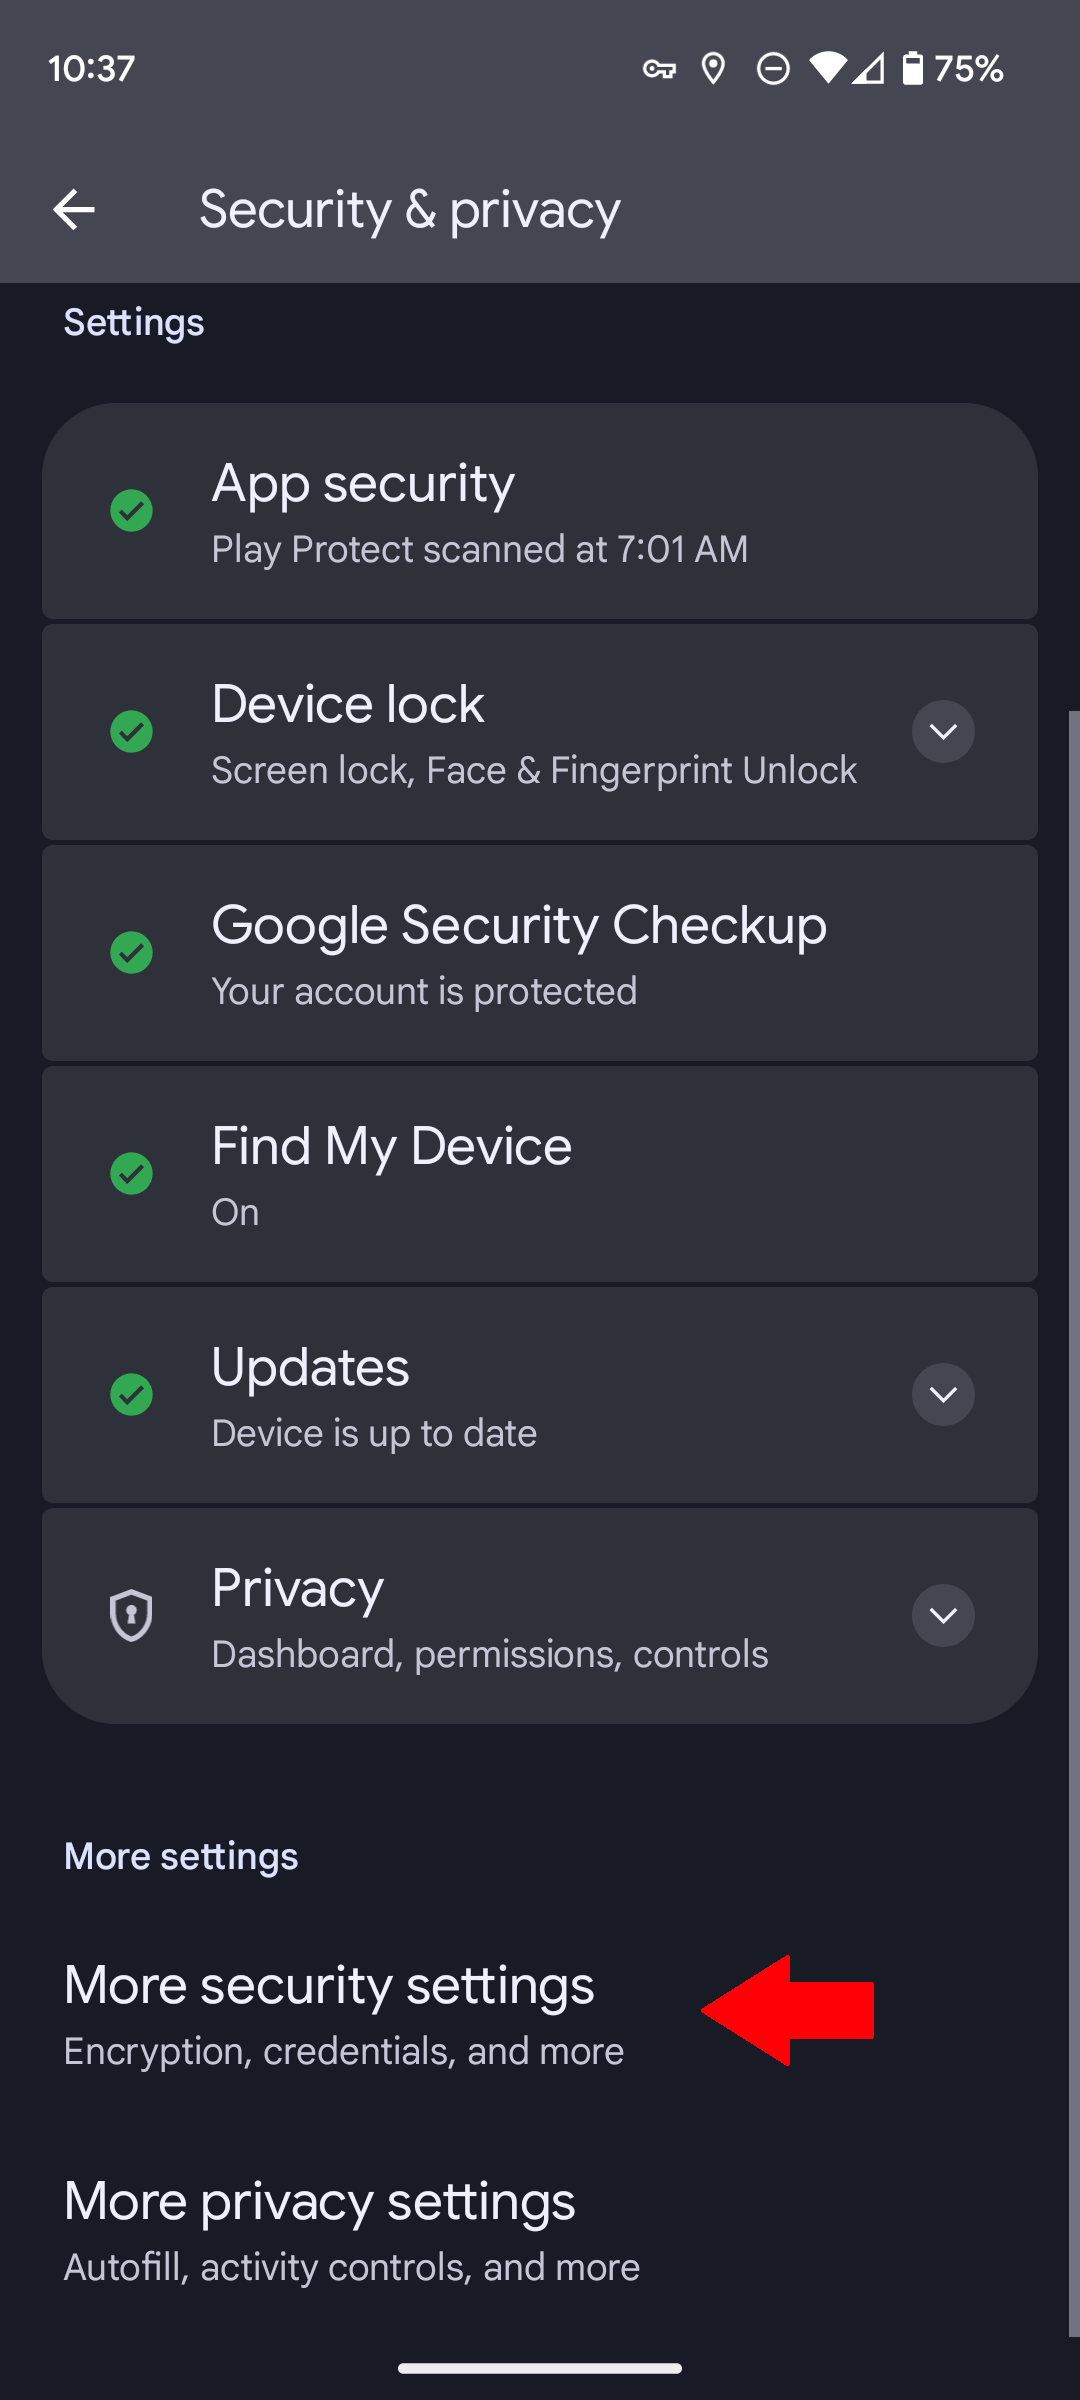 Configurações de segurança e privacidade em um telefone Google Pixel com uma seta vermelha apontando para a opção Mais configurações de segurança